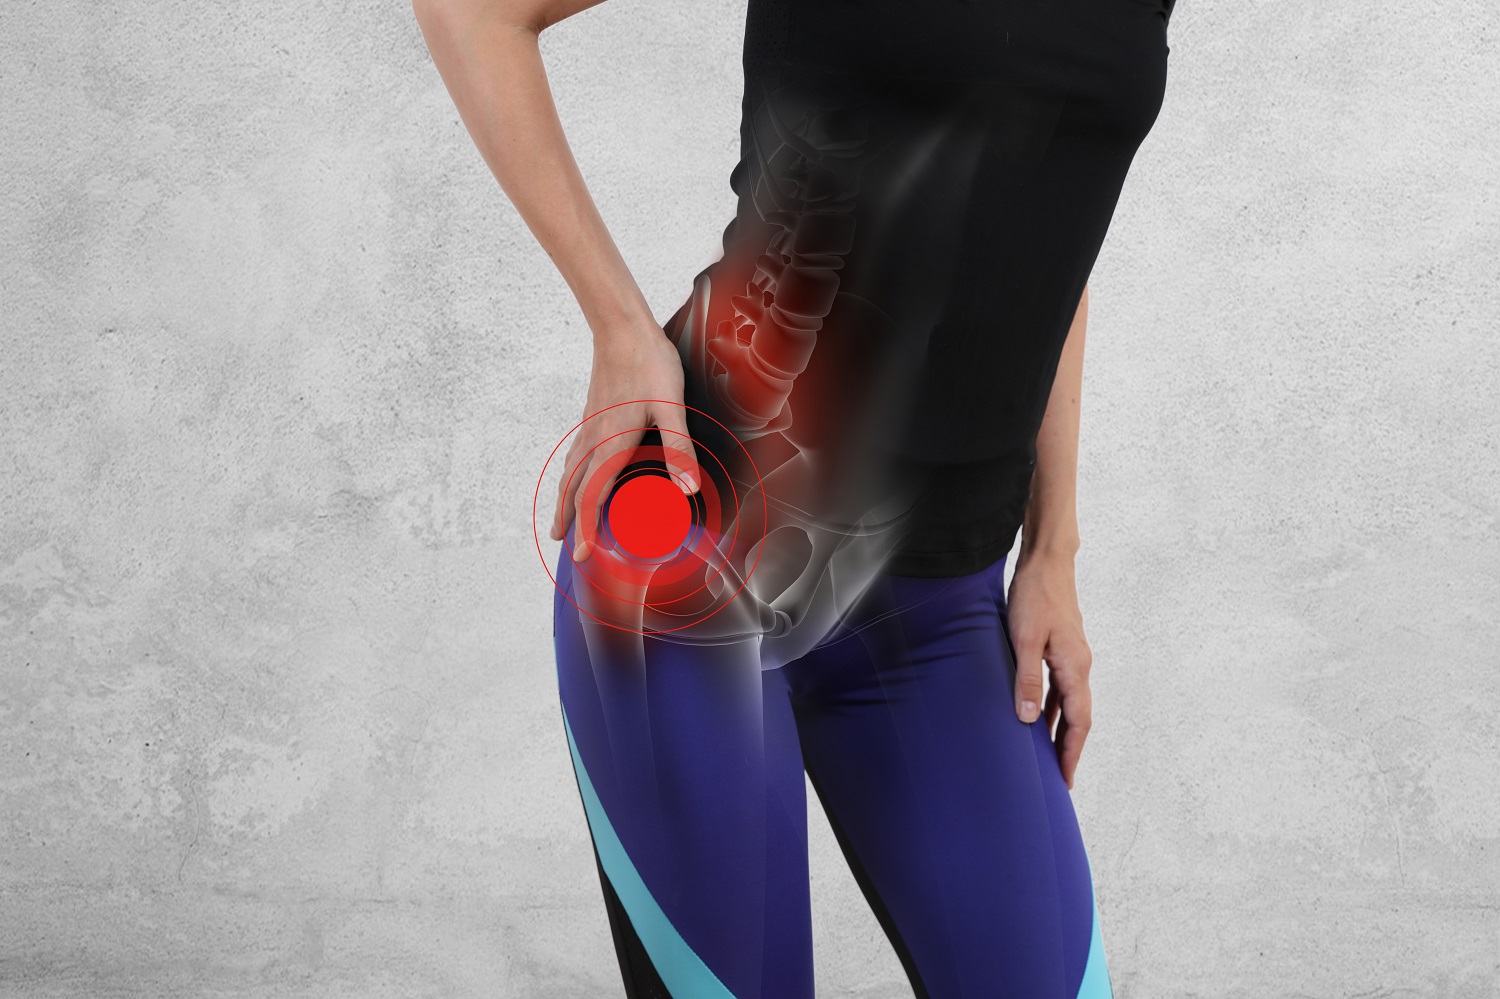 elektroforeza boli u zglobovima artritis i artroza liječenja koljena